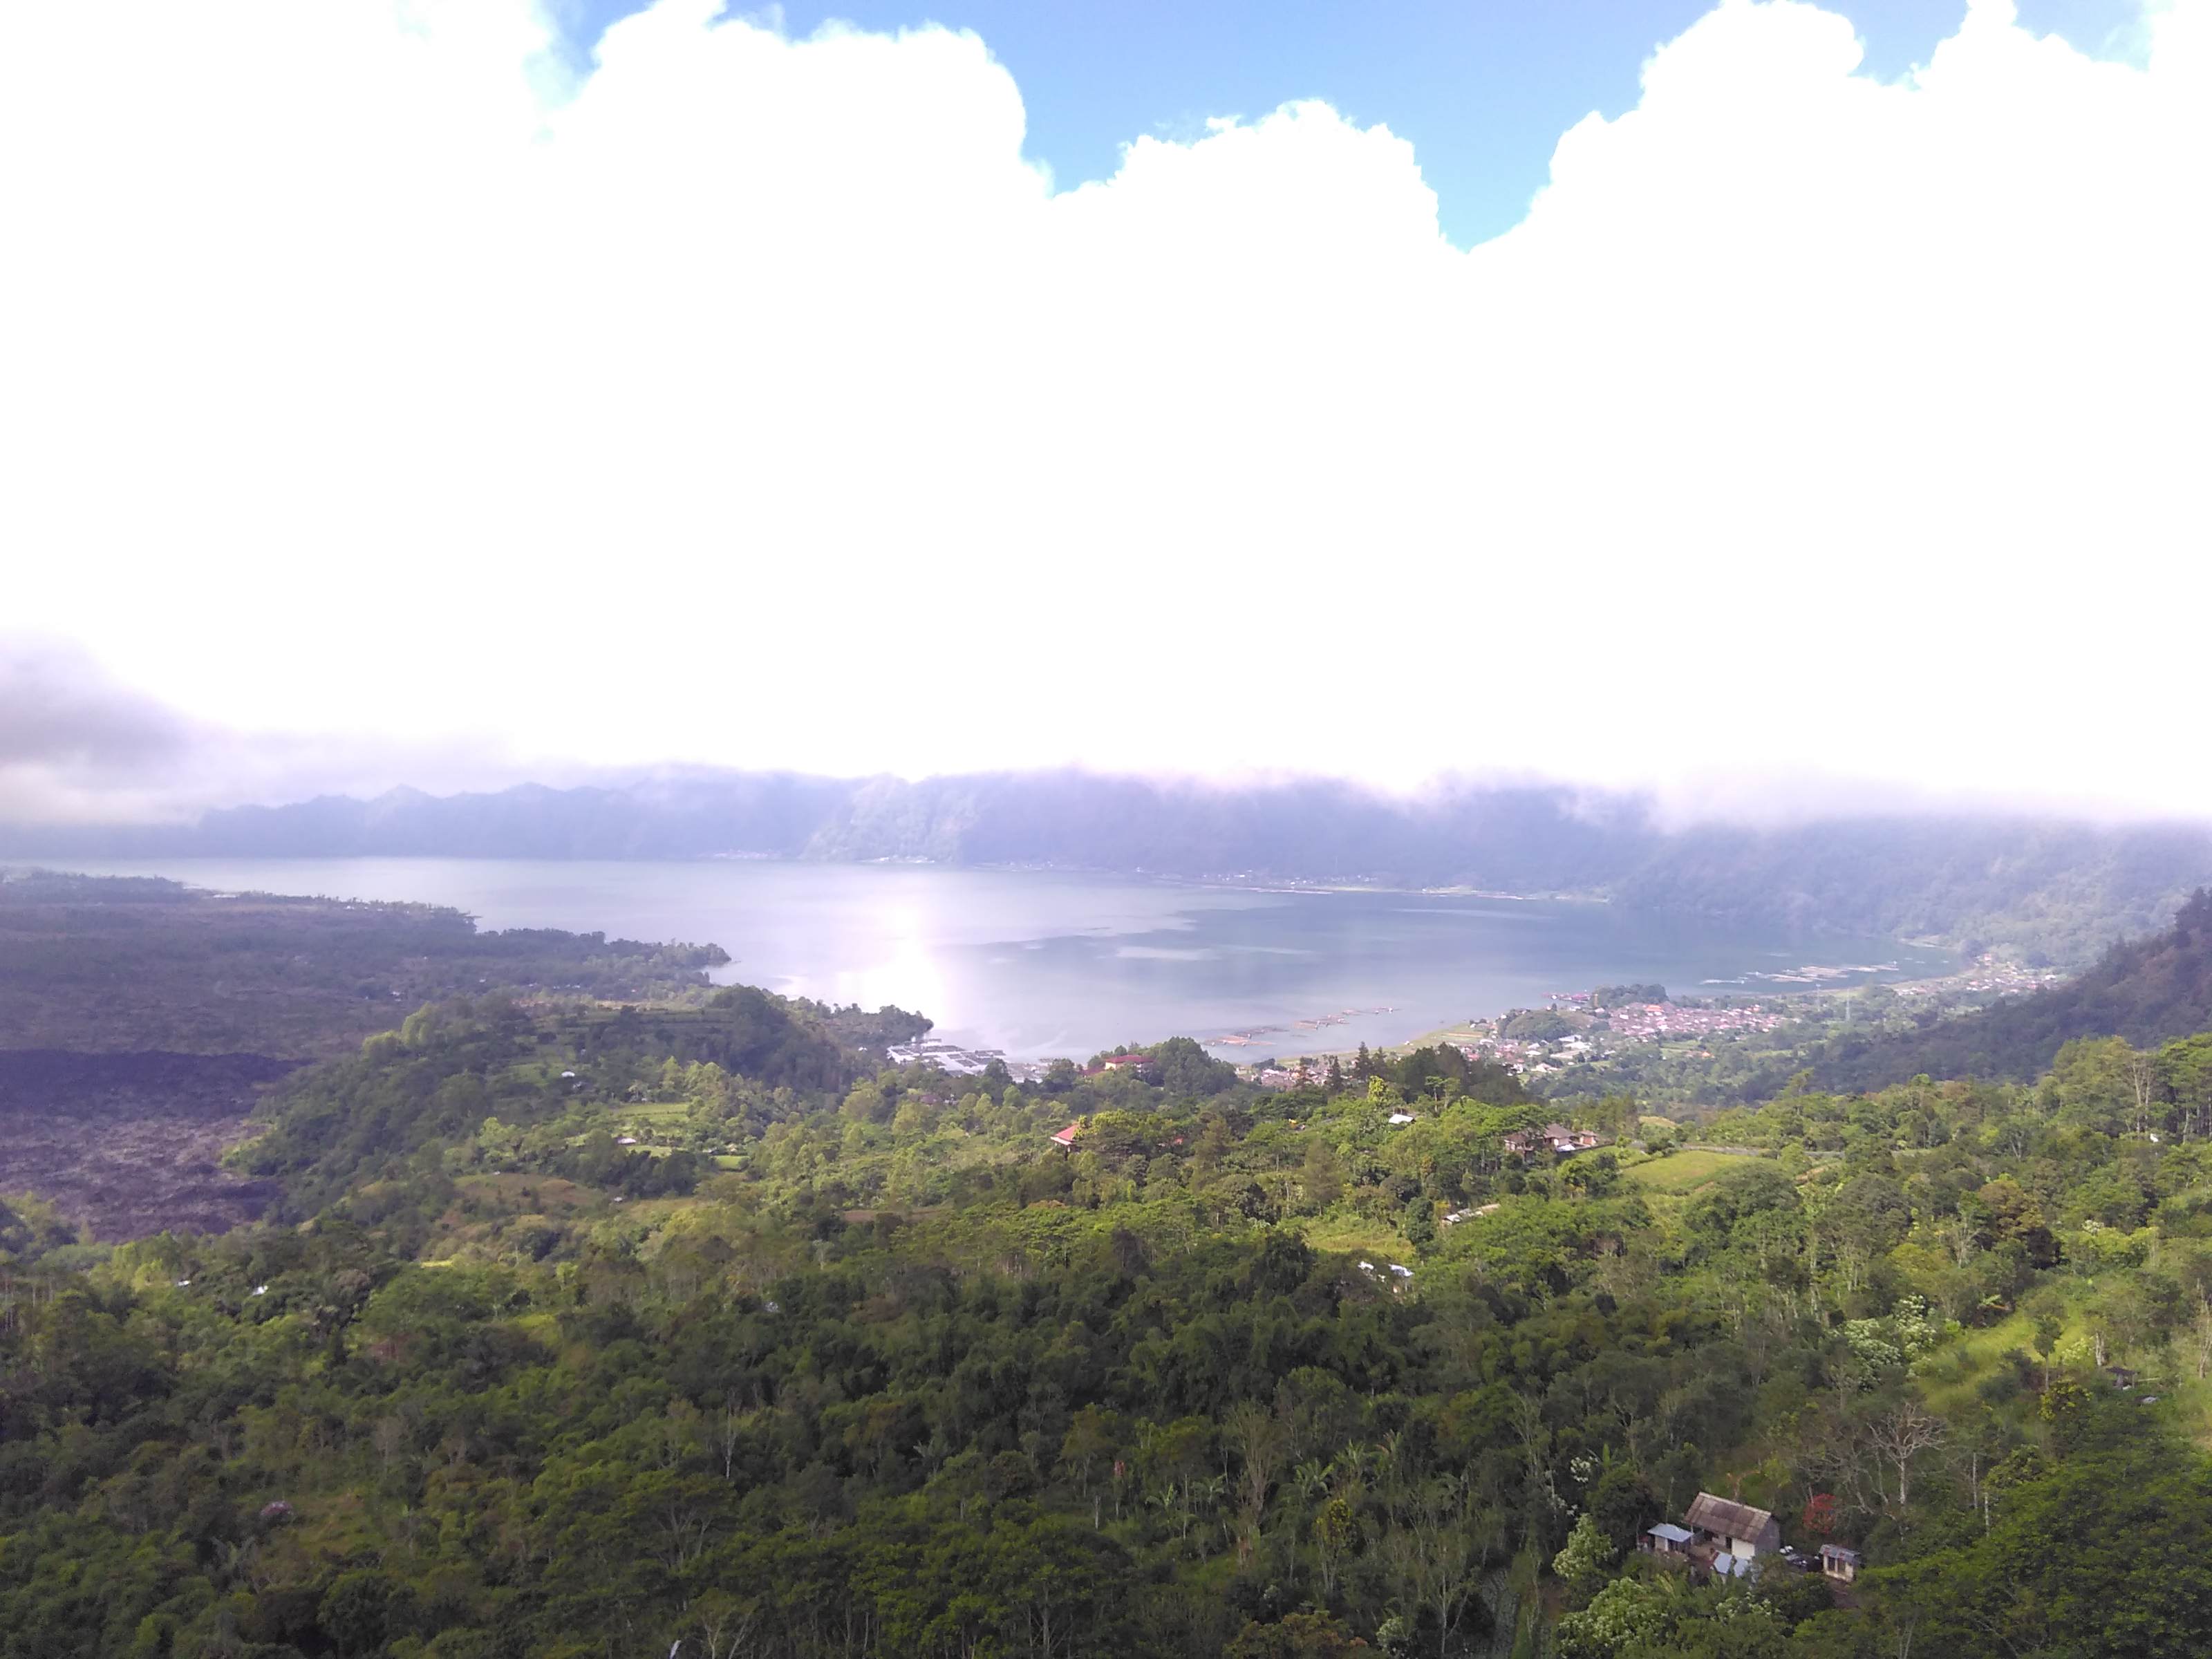 View of Lake Batur from Kintamani